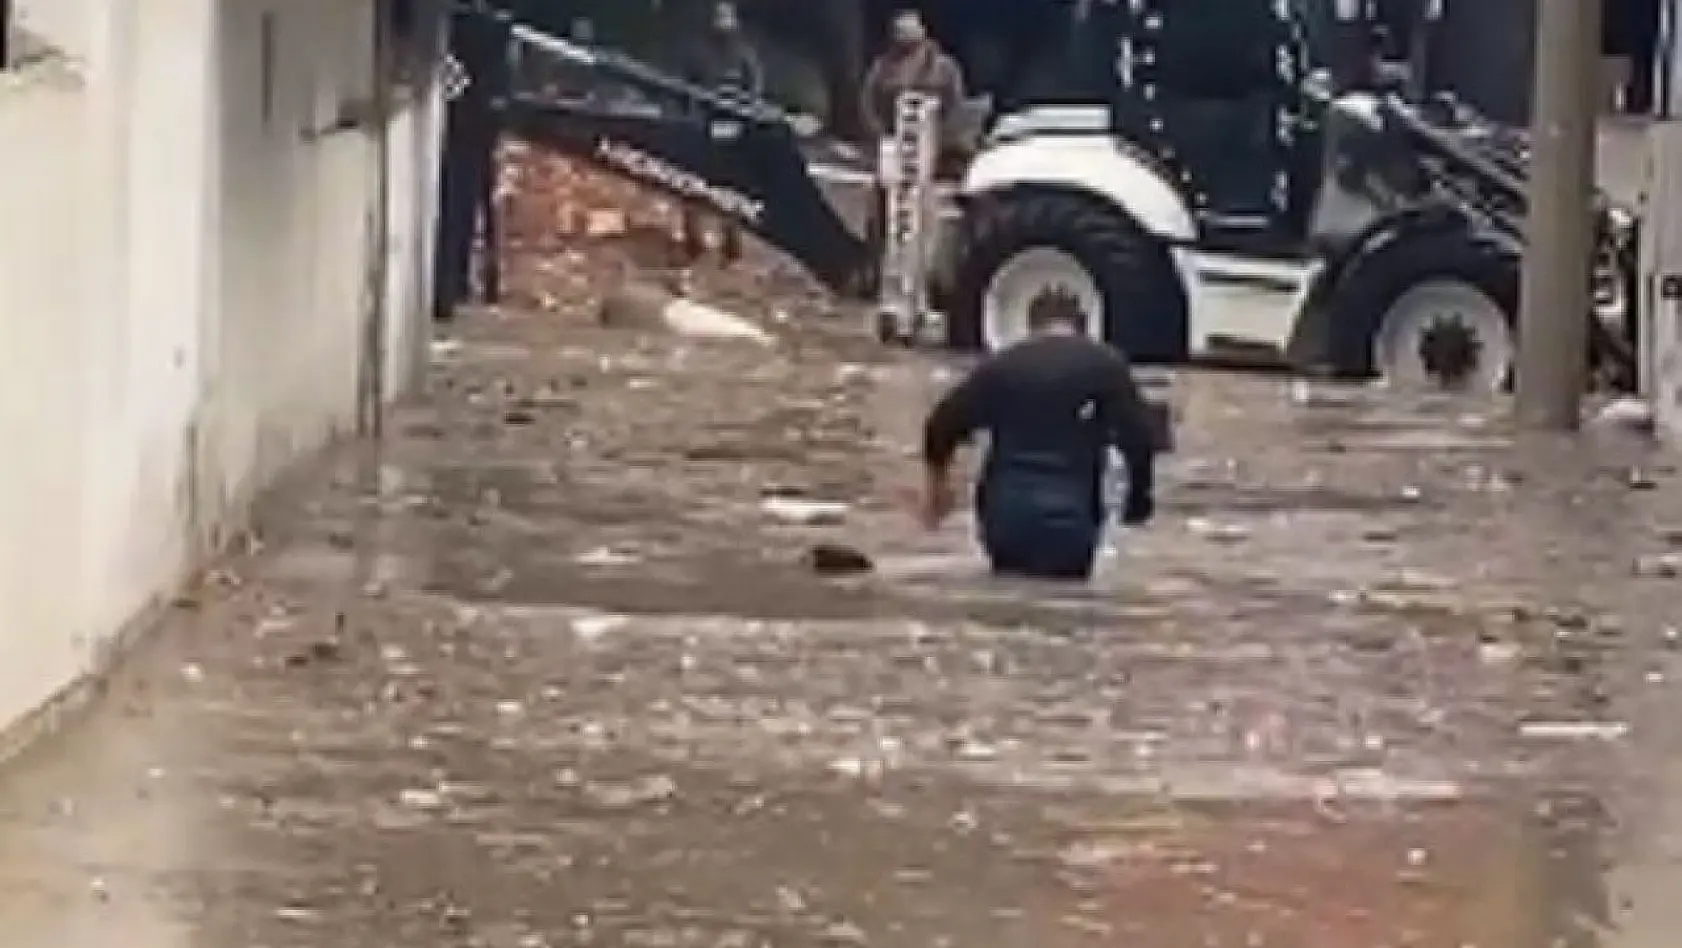 İzmir'de metrekareye 15 kilogram yağış düştü